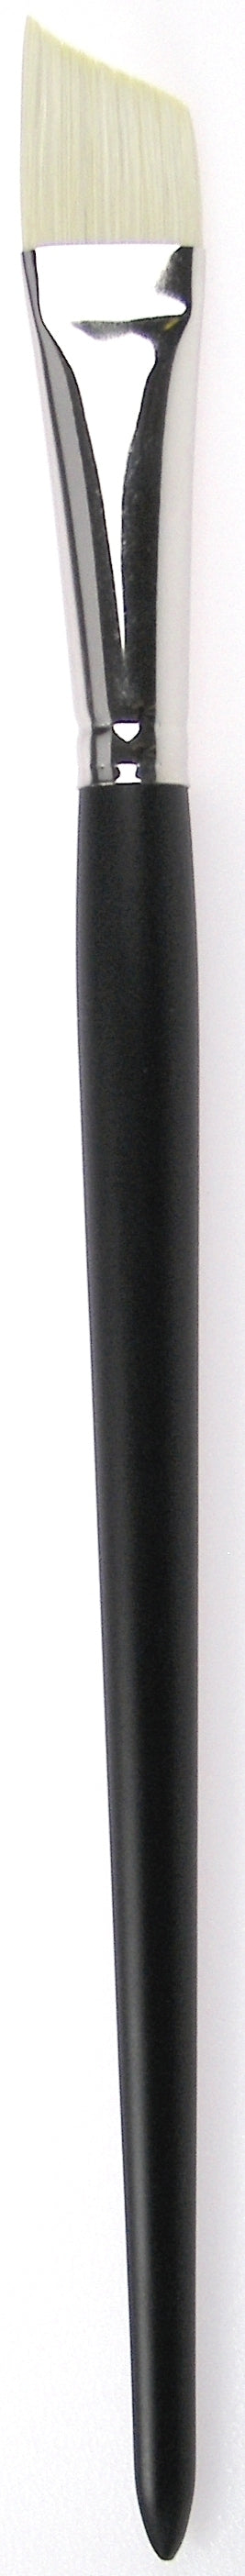 Zahn Oil-Acrylic Brush Angular, Brislon, 9958 Size 4